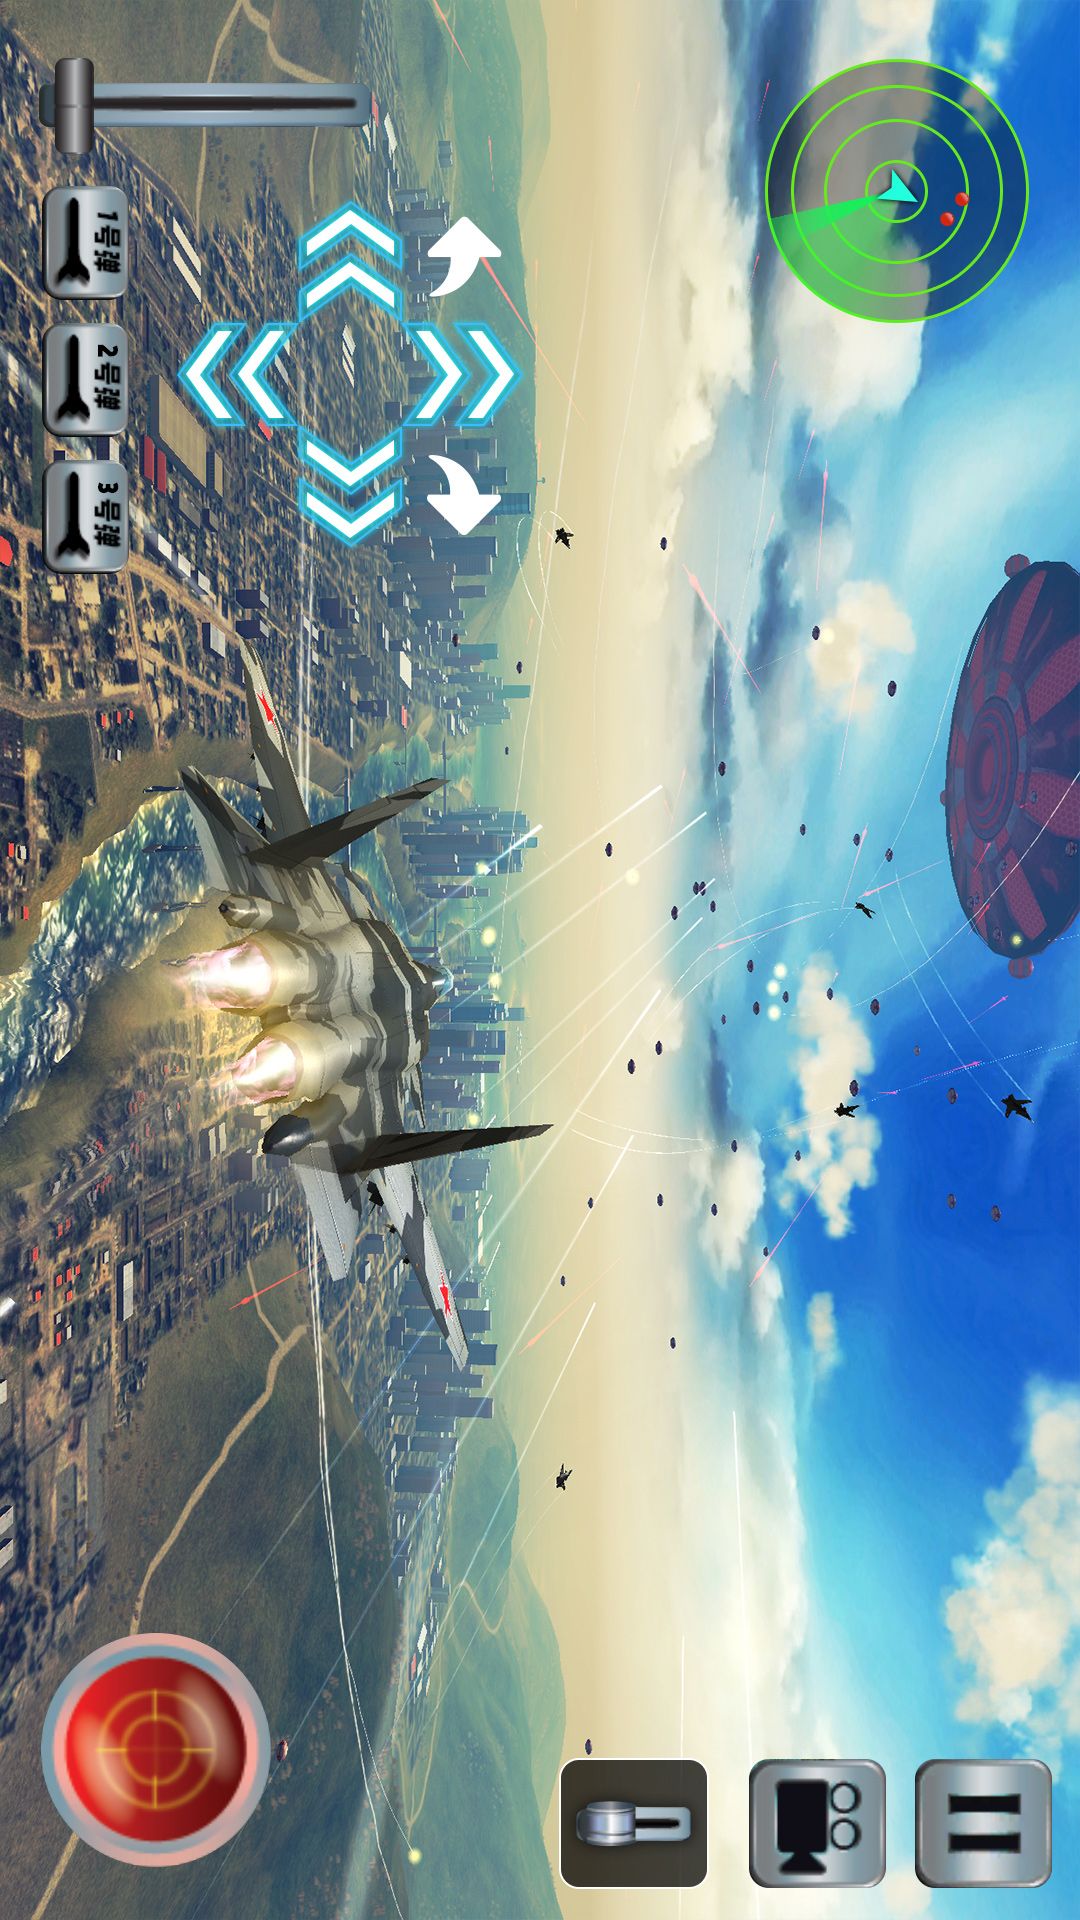 战斗机飞行模拟游戏最新版